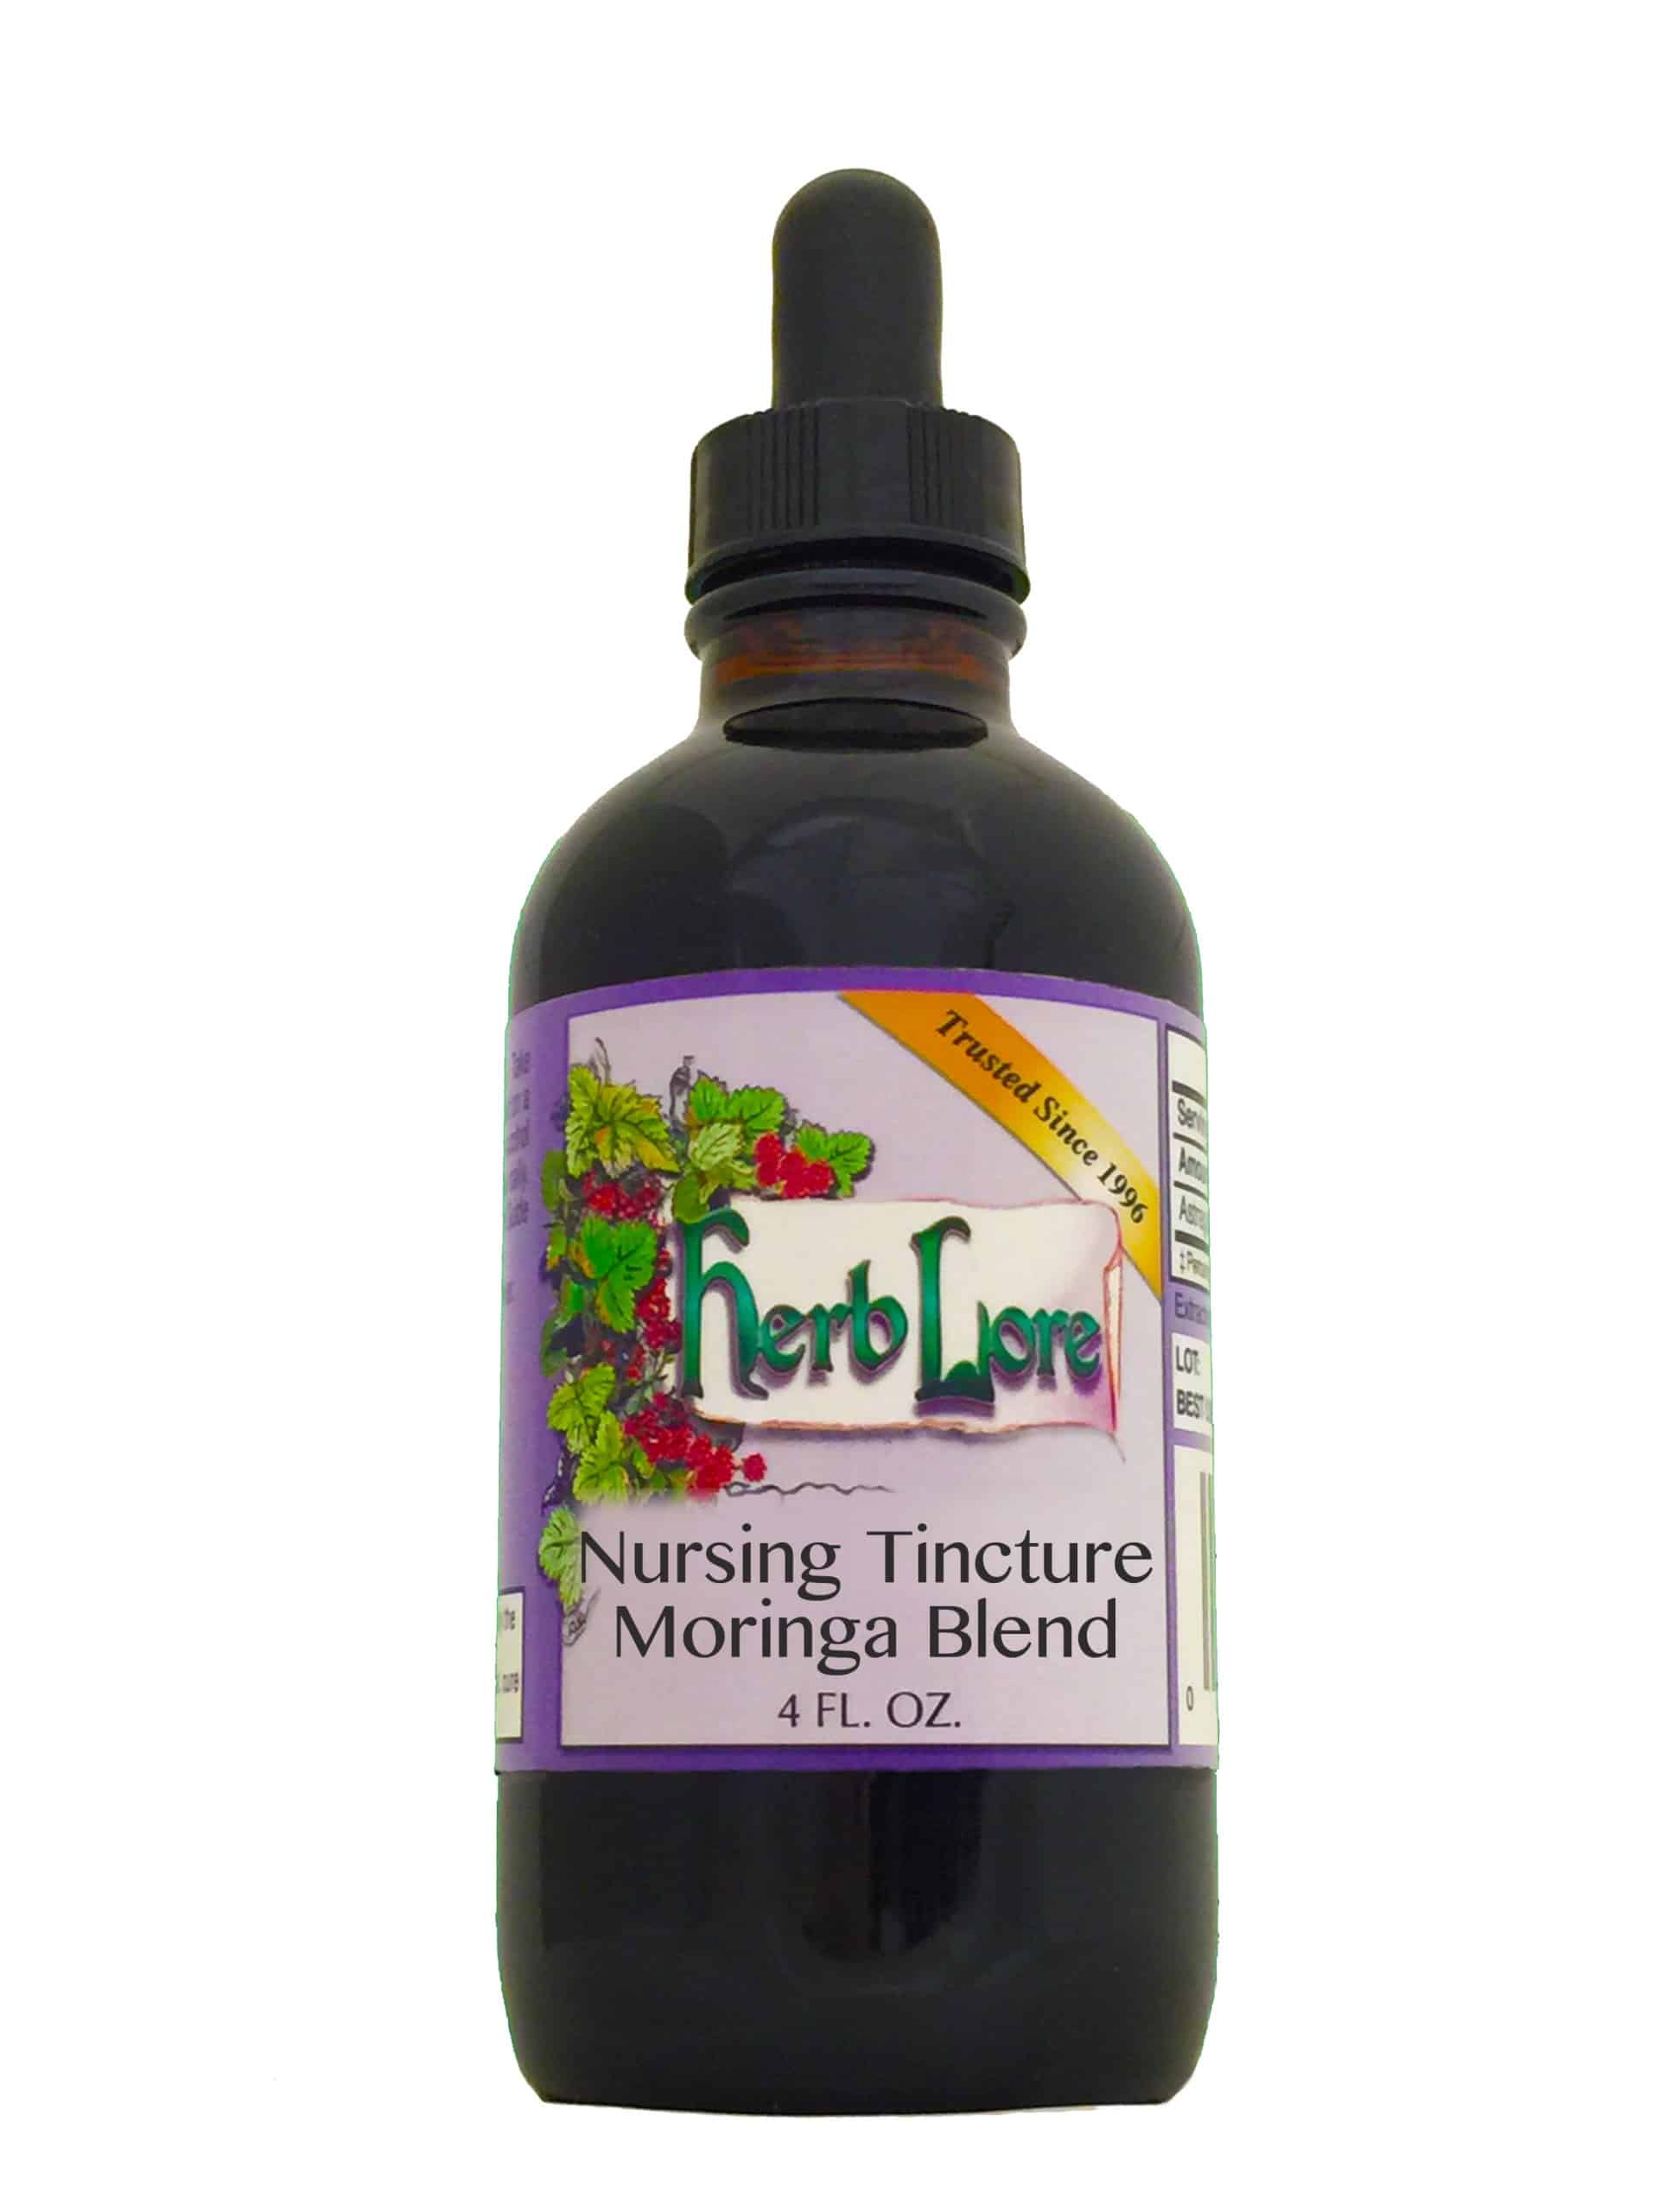 Nursing Tincture  (formerly Nursing Tincture Moringa Blend)